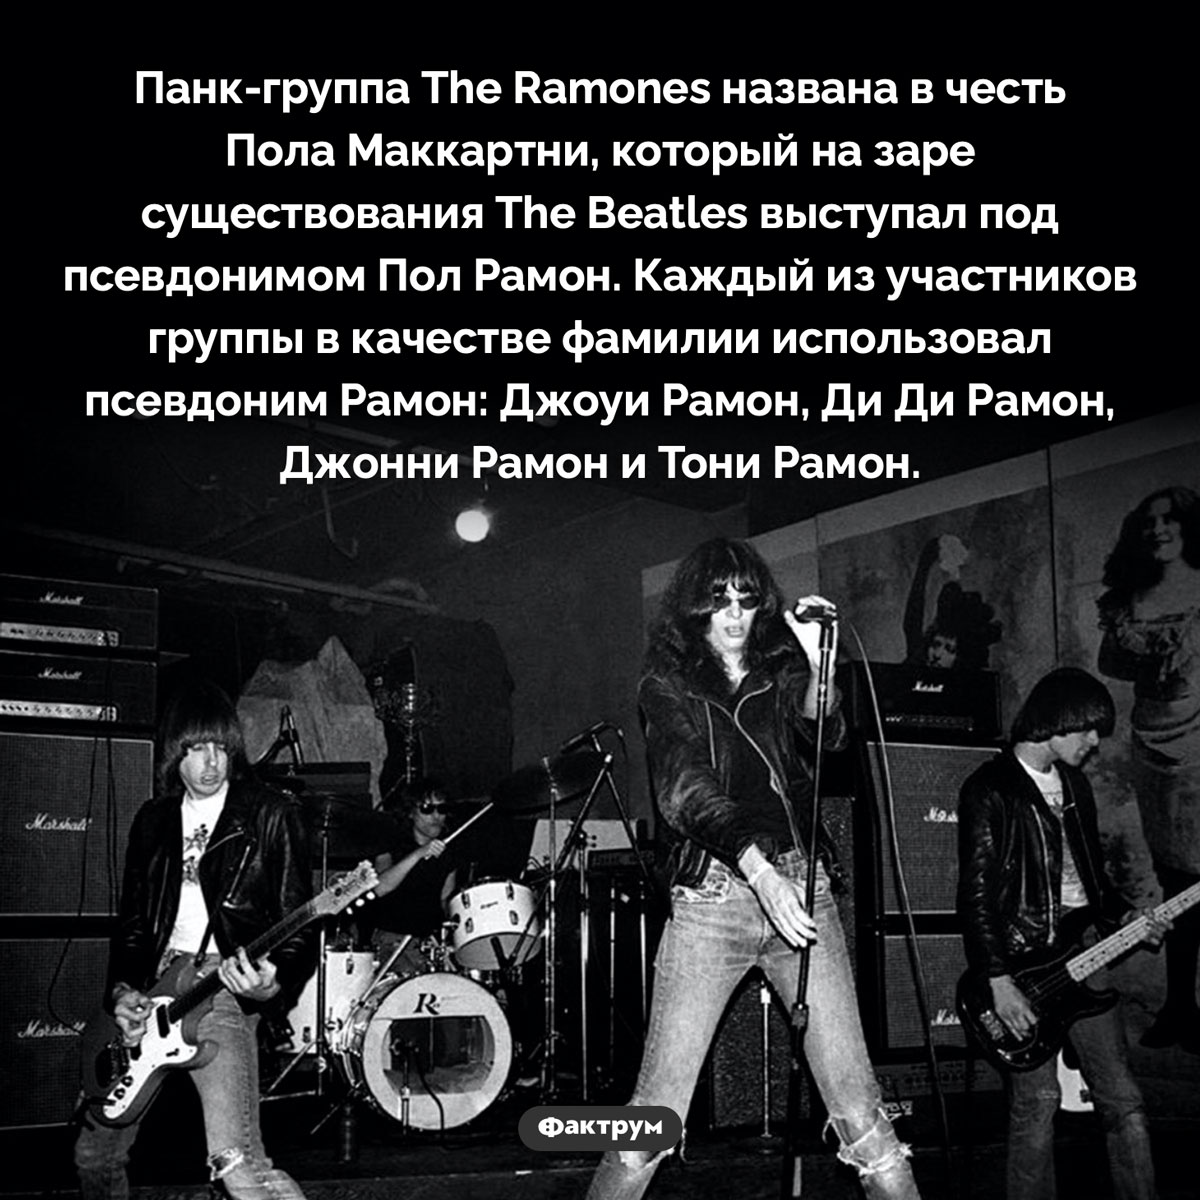 Что общего между The Ramones и Полом Маккартни. Панк-группа The Ramones названа в честь Пола Маккартни, который на заре существования The Beatles выступал под псевдонимом Пол Рамон. Каждый из участников группы в качестве фамилии использовал псевдоним Рамон: Джоуи Рамон, Ди Ди Рамон, Джонни Рамон и Тони Рамон.